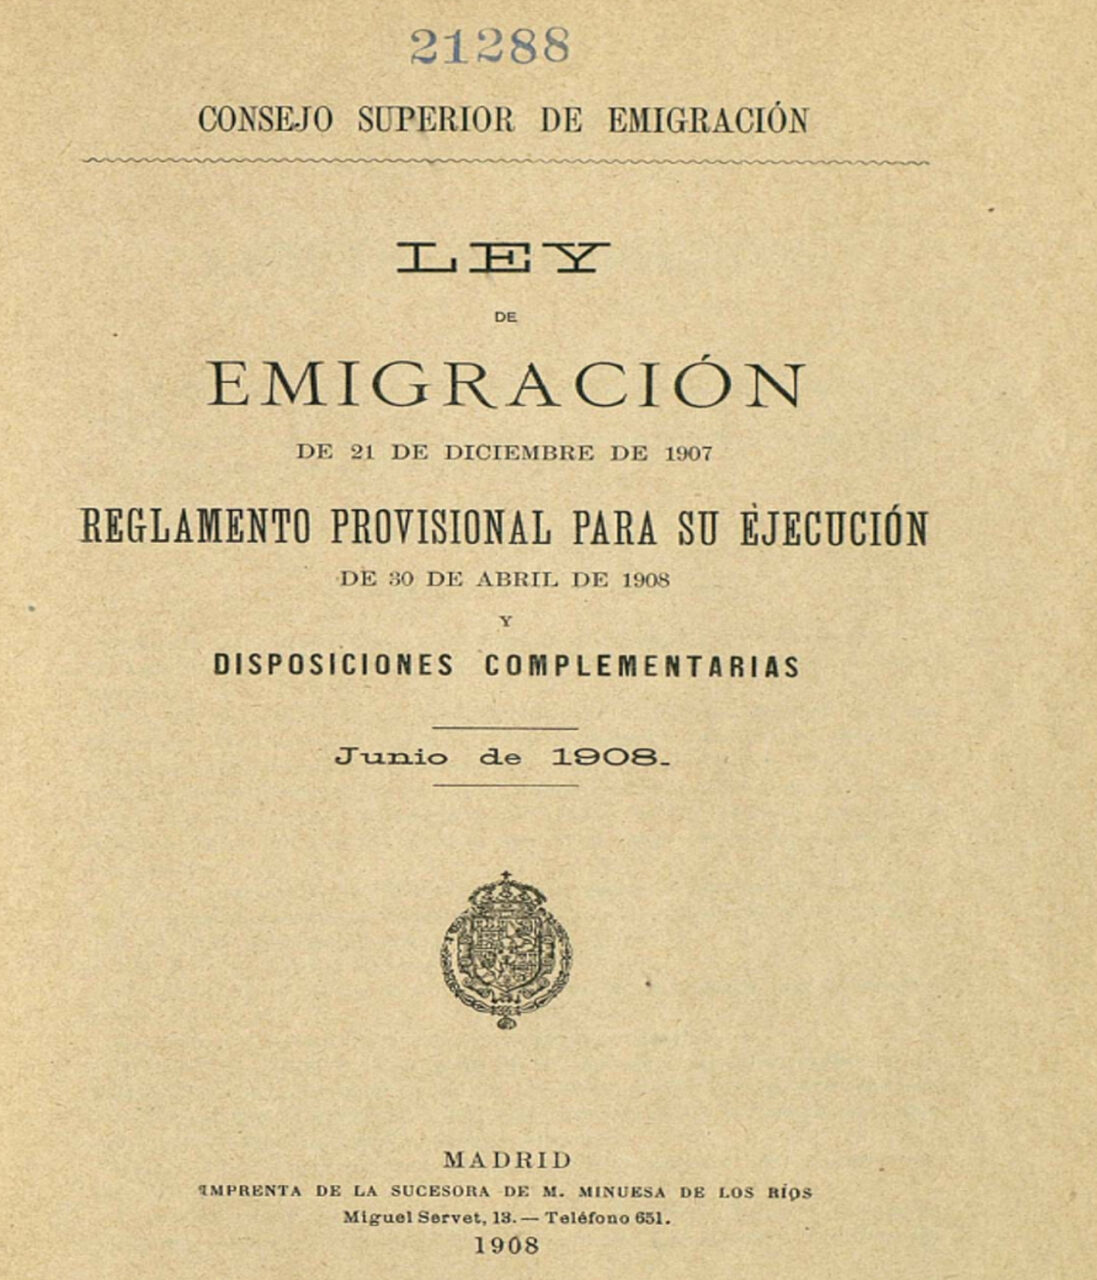 Ley de Emigración de 21 de diciembre de 1907. Regalmento provisional para su ejecución, de 30 de abril de 1908, y disposiciones complementarias. Consejo Superior de Emigración, España